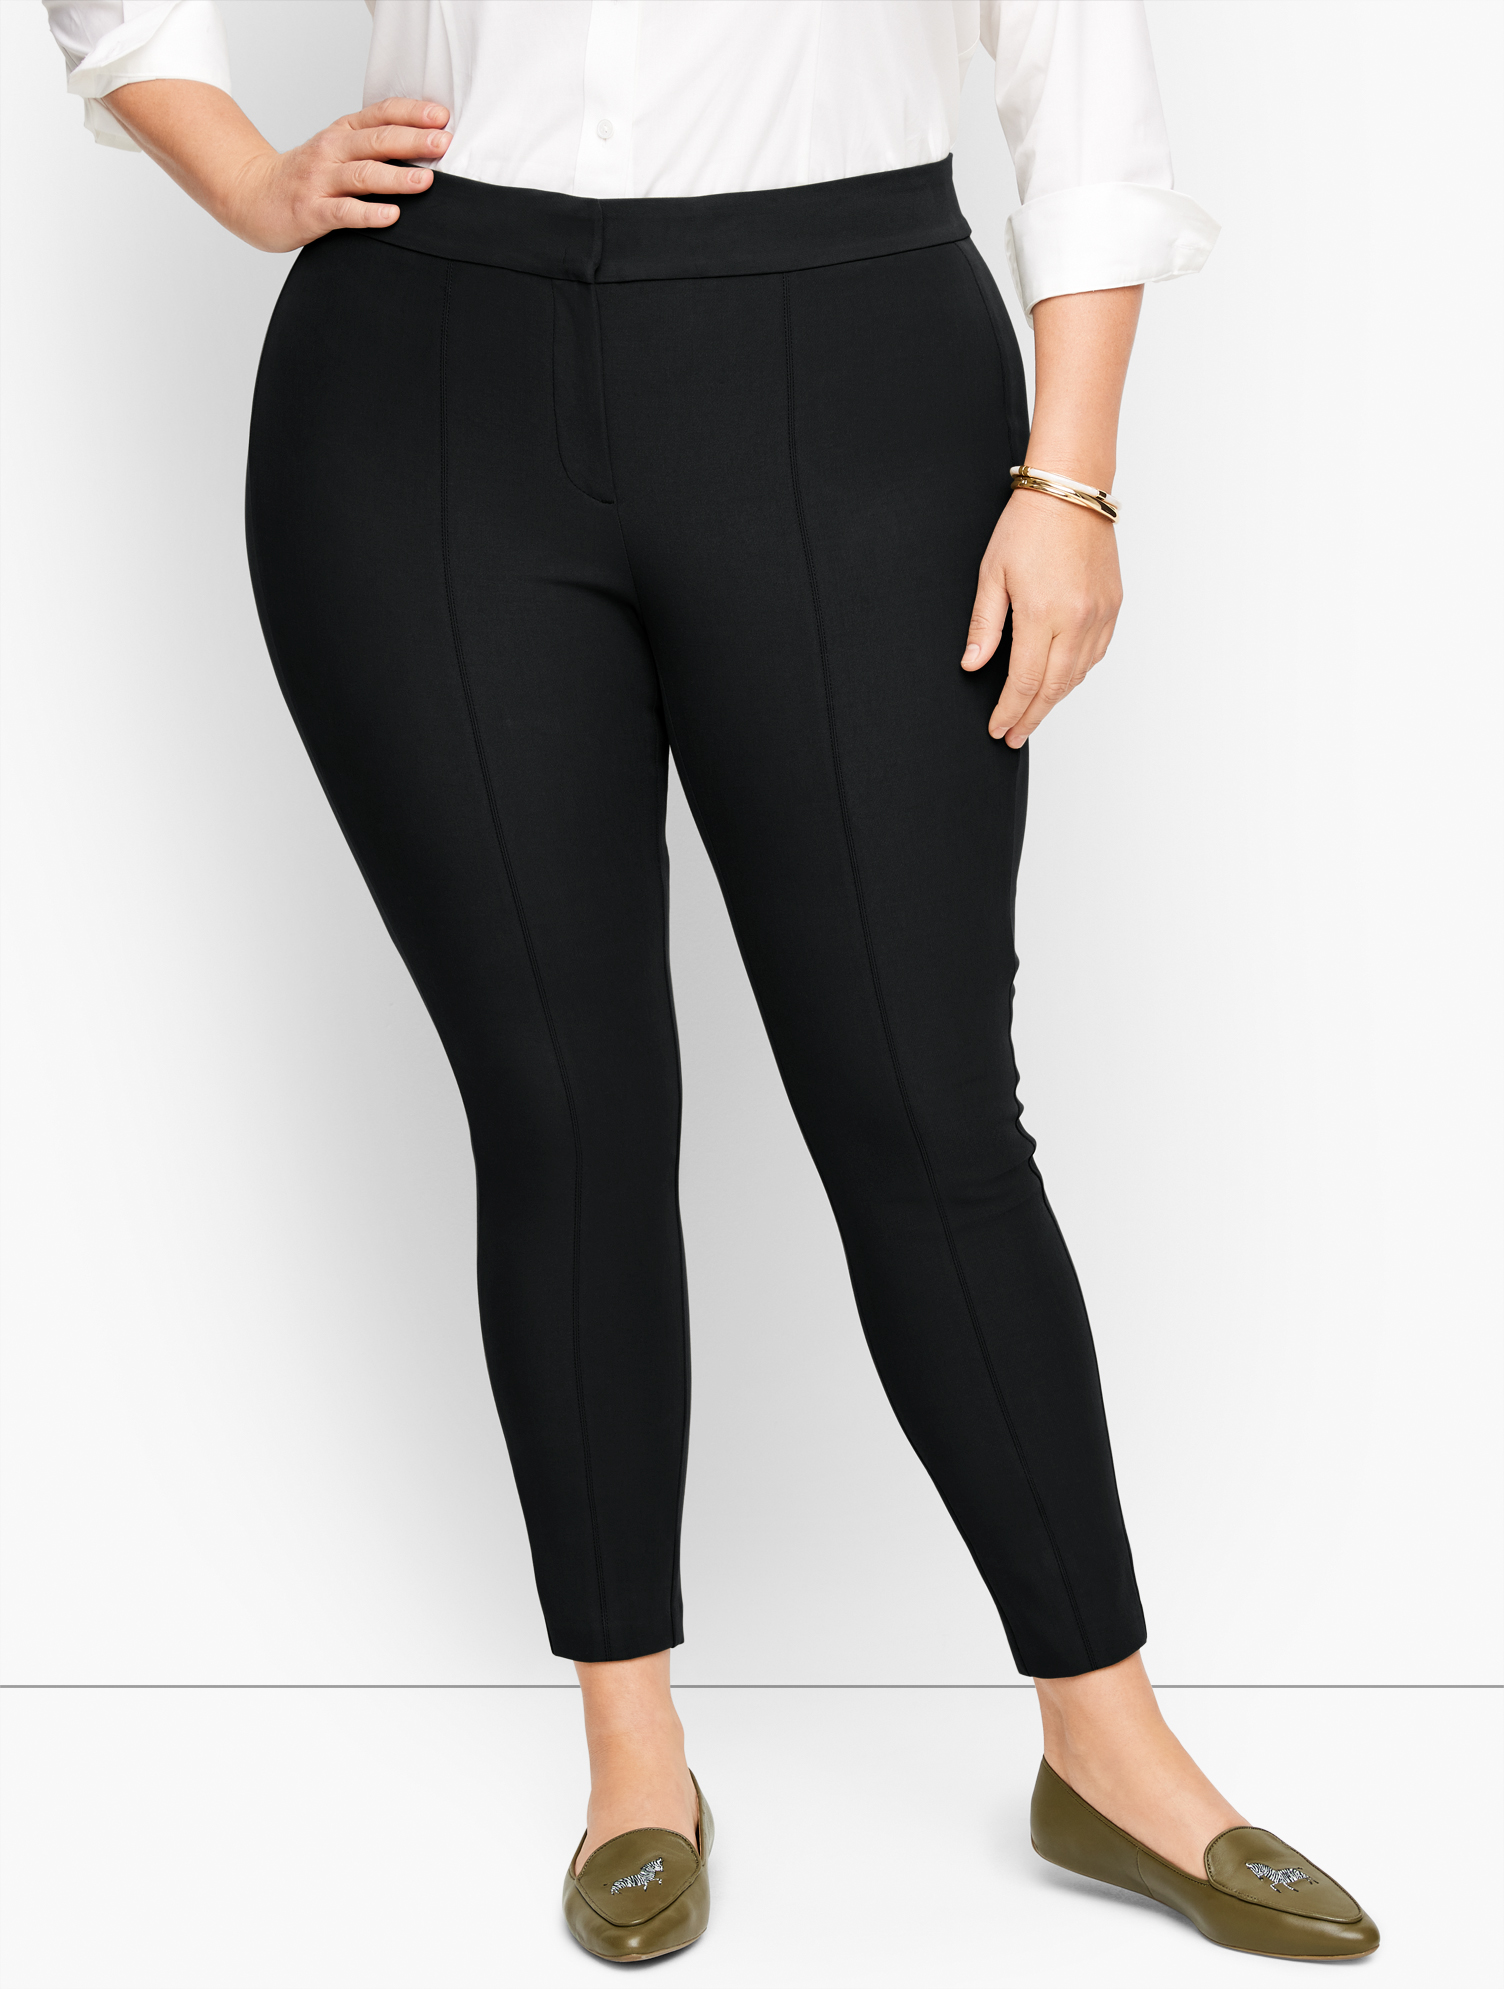 Talbots Plus Size Exclusive  Portland Pants - Black - 22